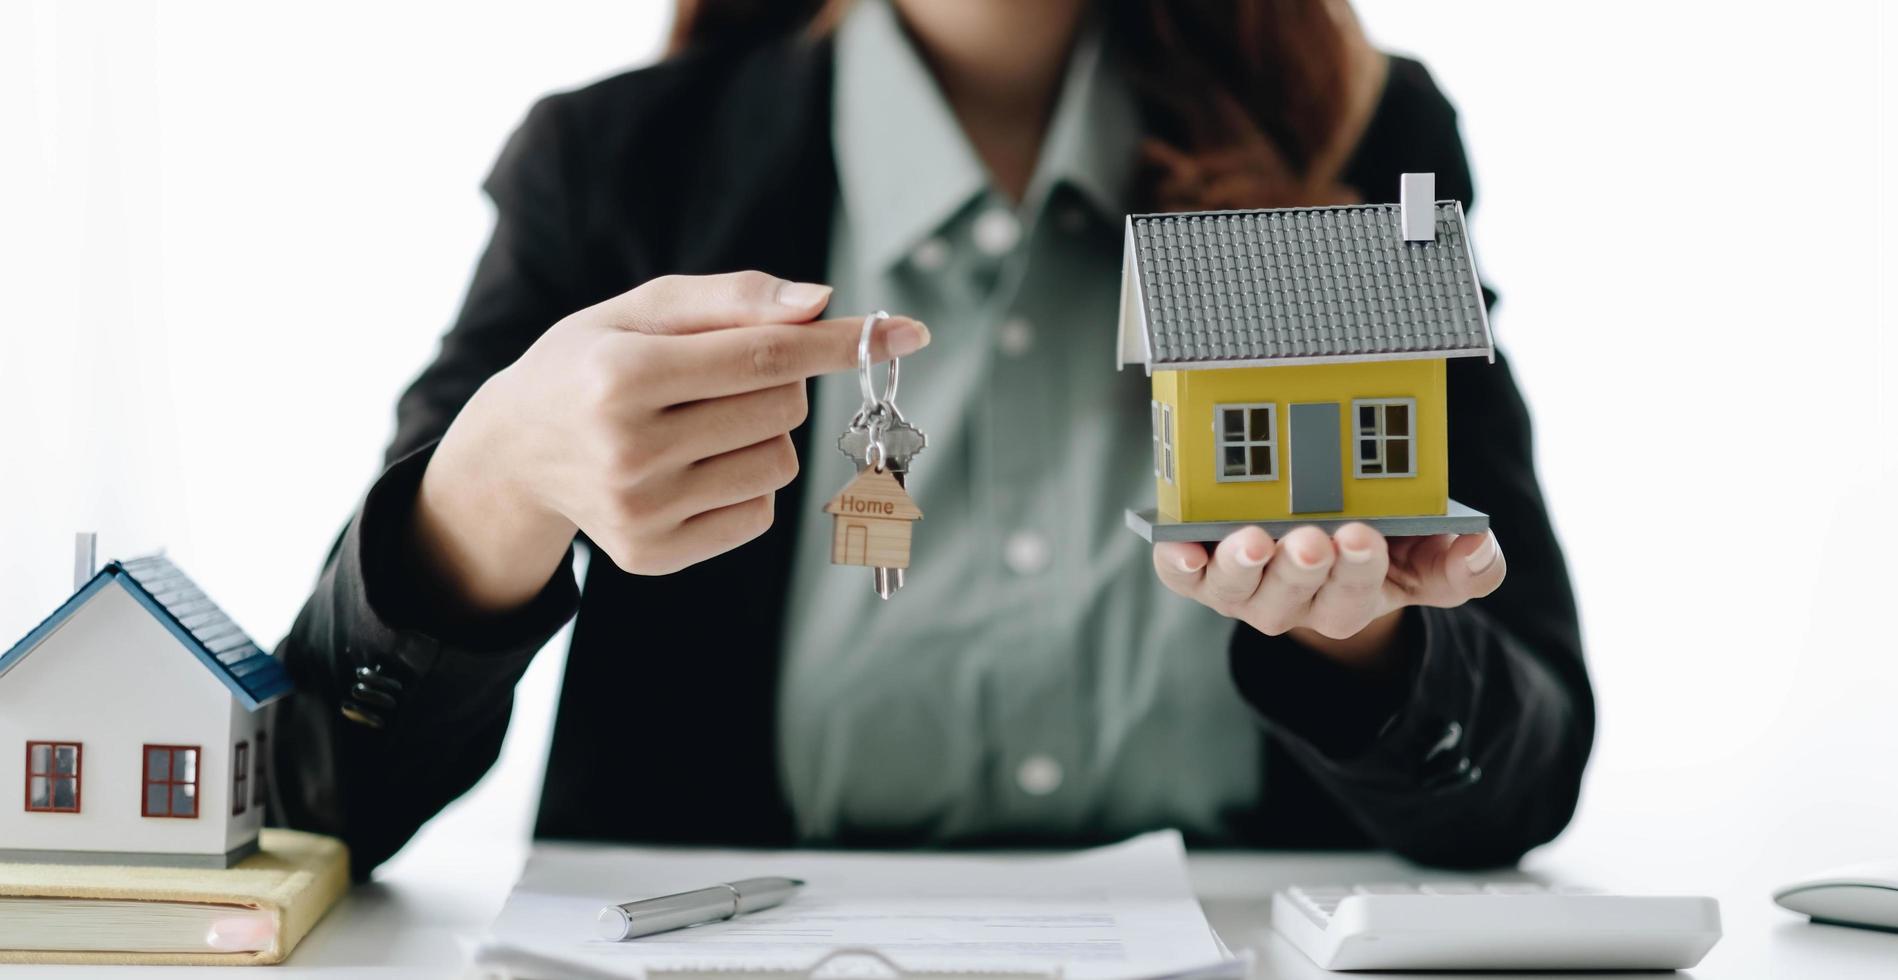 l'agente immobiliare presenta il mutuo per la casa e invia le chiavi al cliente dopo aver firmato il contratto per l'assicurazione sulla casa in affitto con il modulo di proprietà approvato. foto